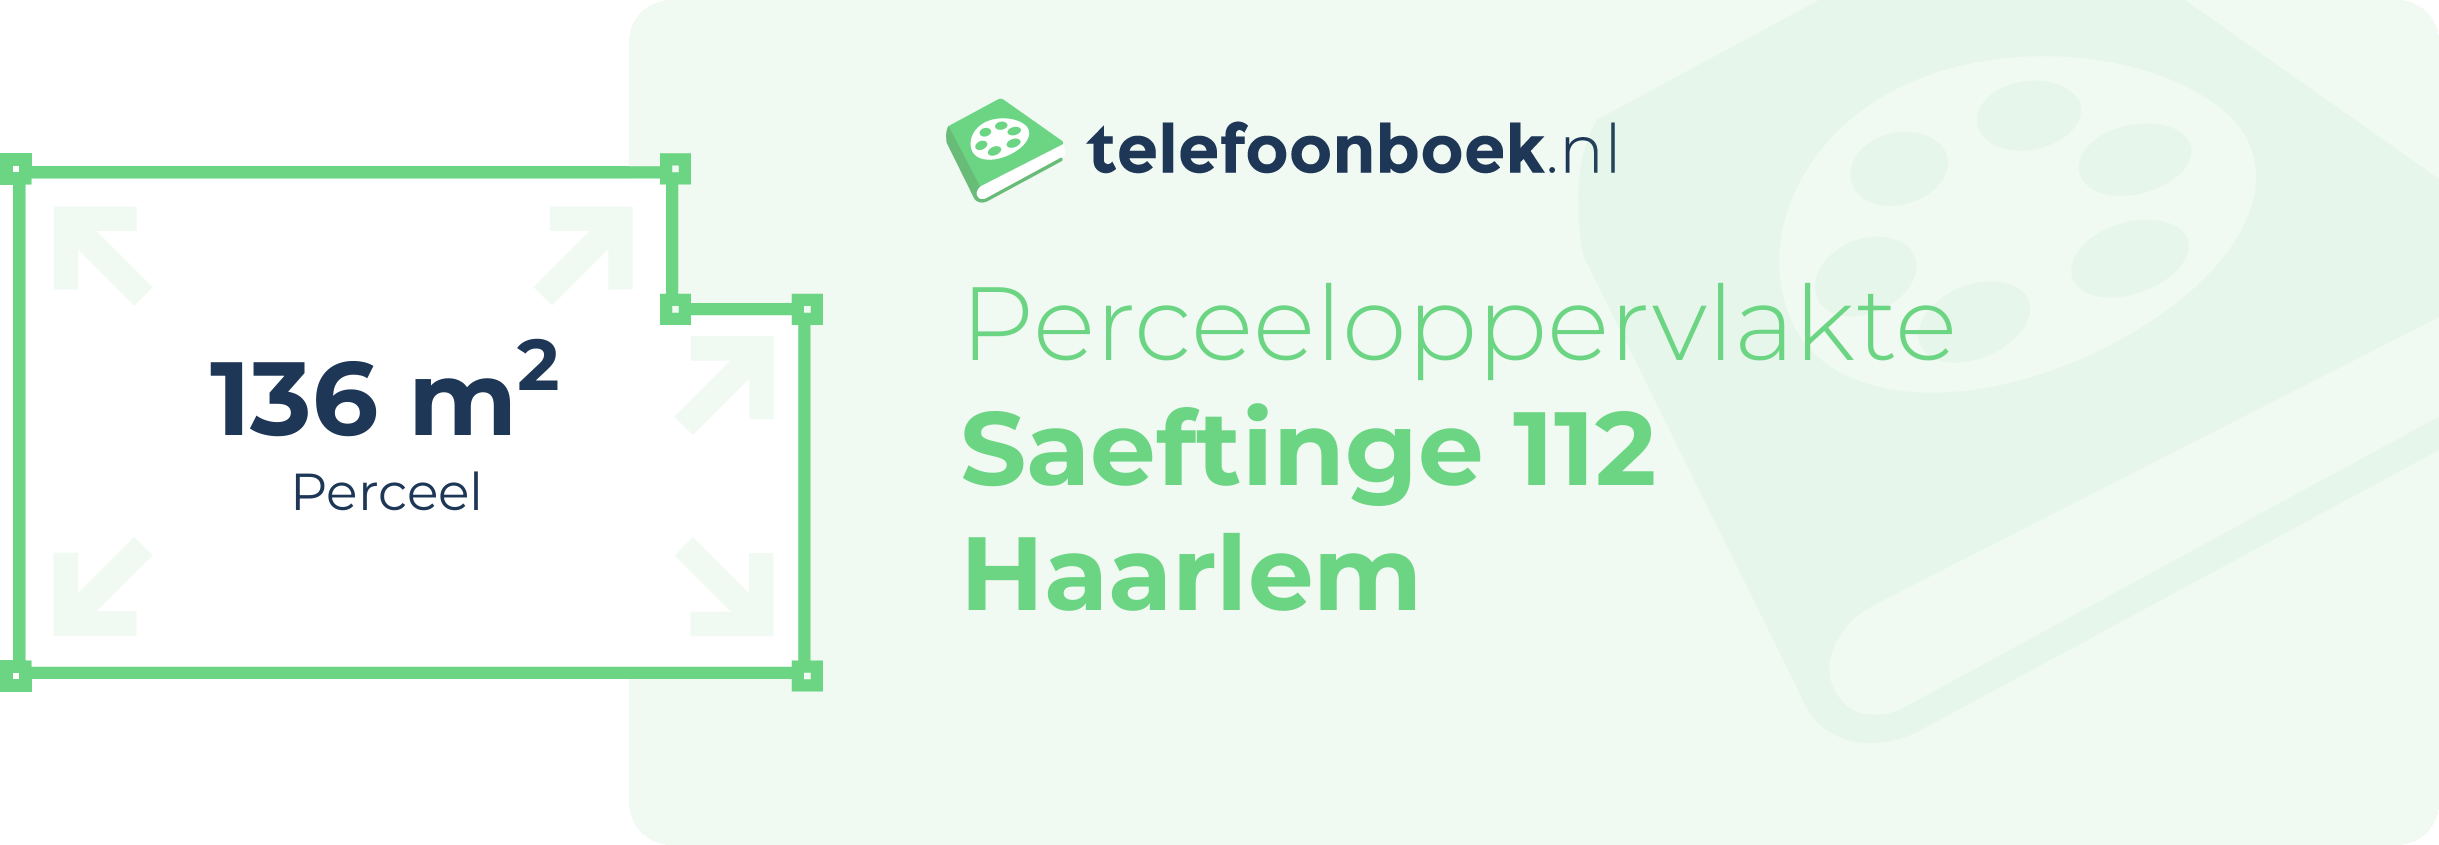 Perceeloppervlakte Saeftinge 112 Haarlem